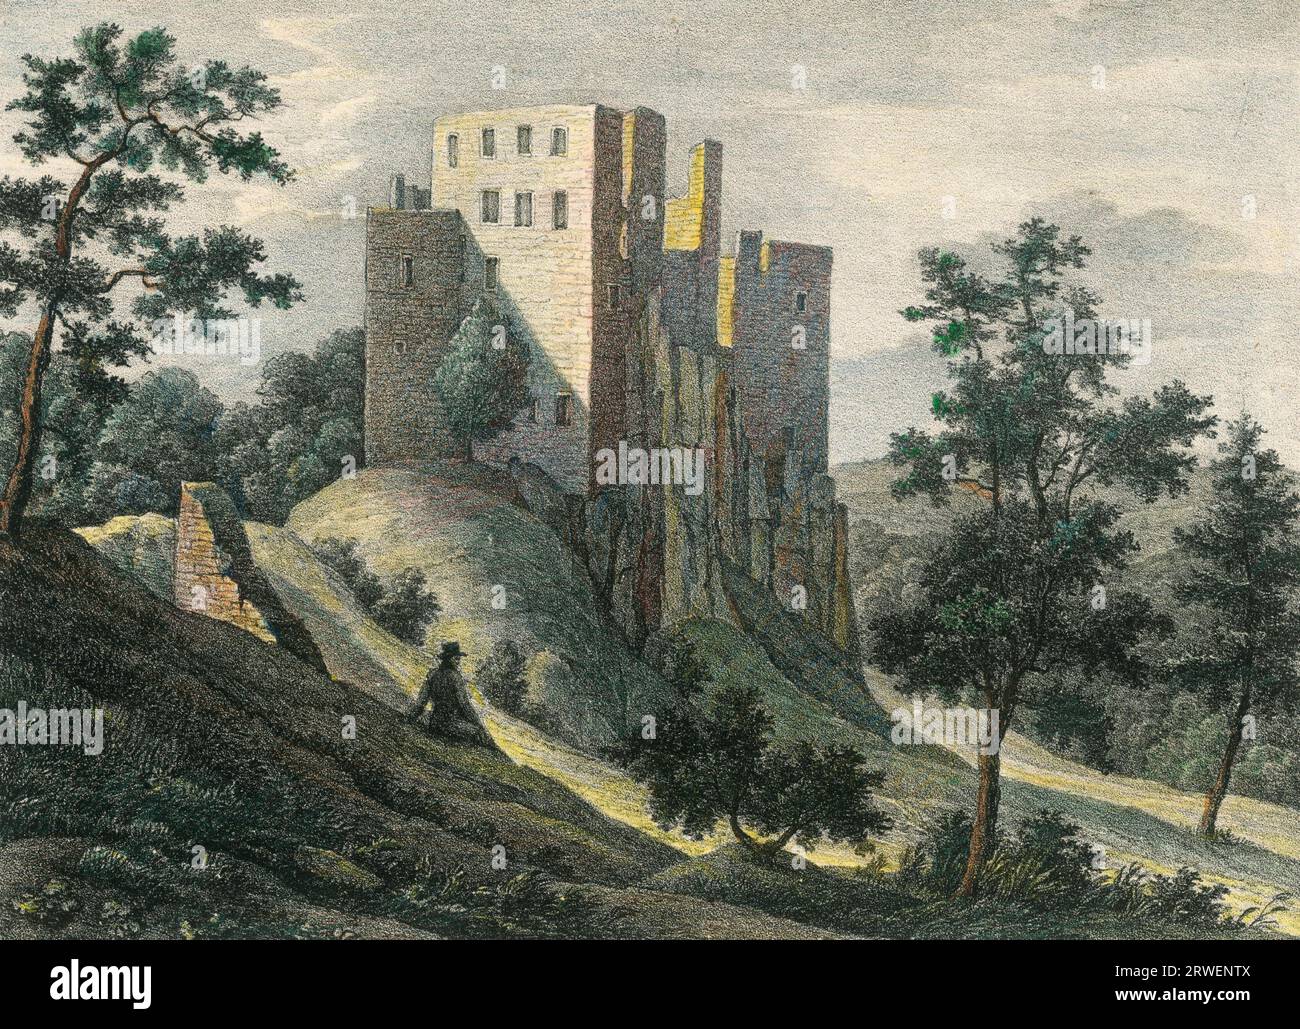 Ruine du château de montagne de Hrusso, Hrusov, 1830, dans le comté de Baar en Hongrie, aujourd'hui une municipalité en Slovaquie, reproduction historique restaurée numériquement à partir d'un modèle du 19e siècle Banque D'Images